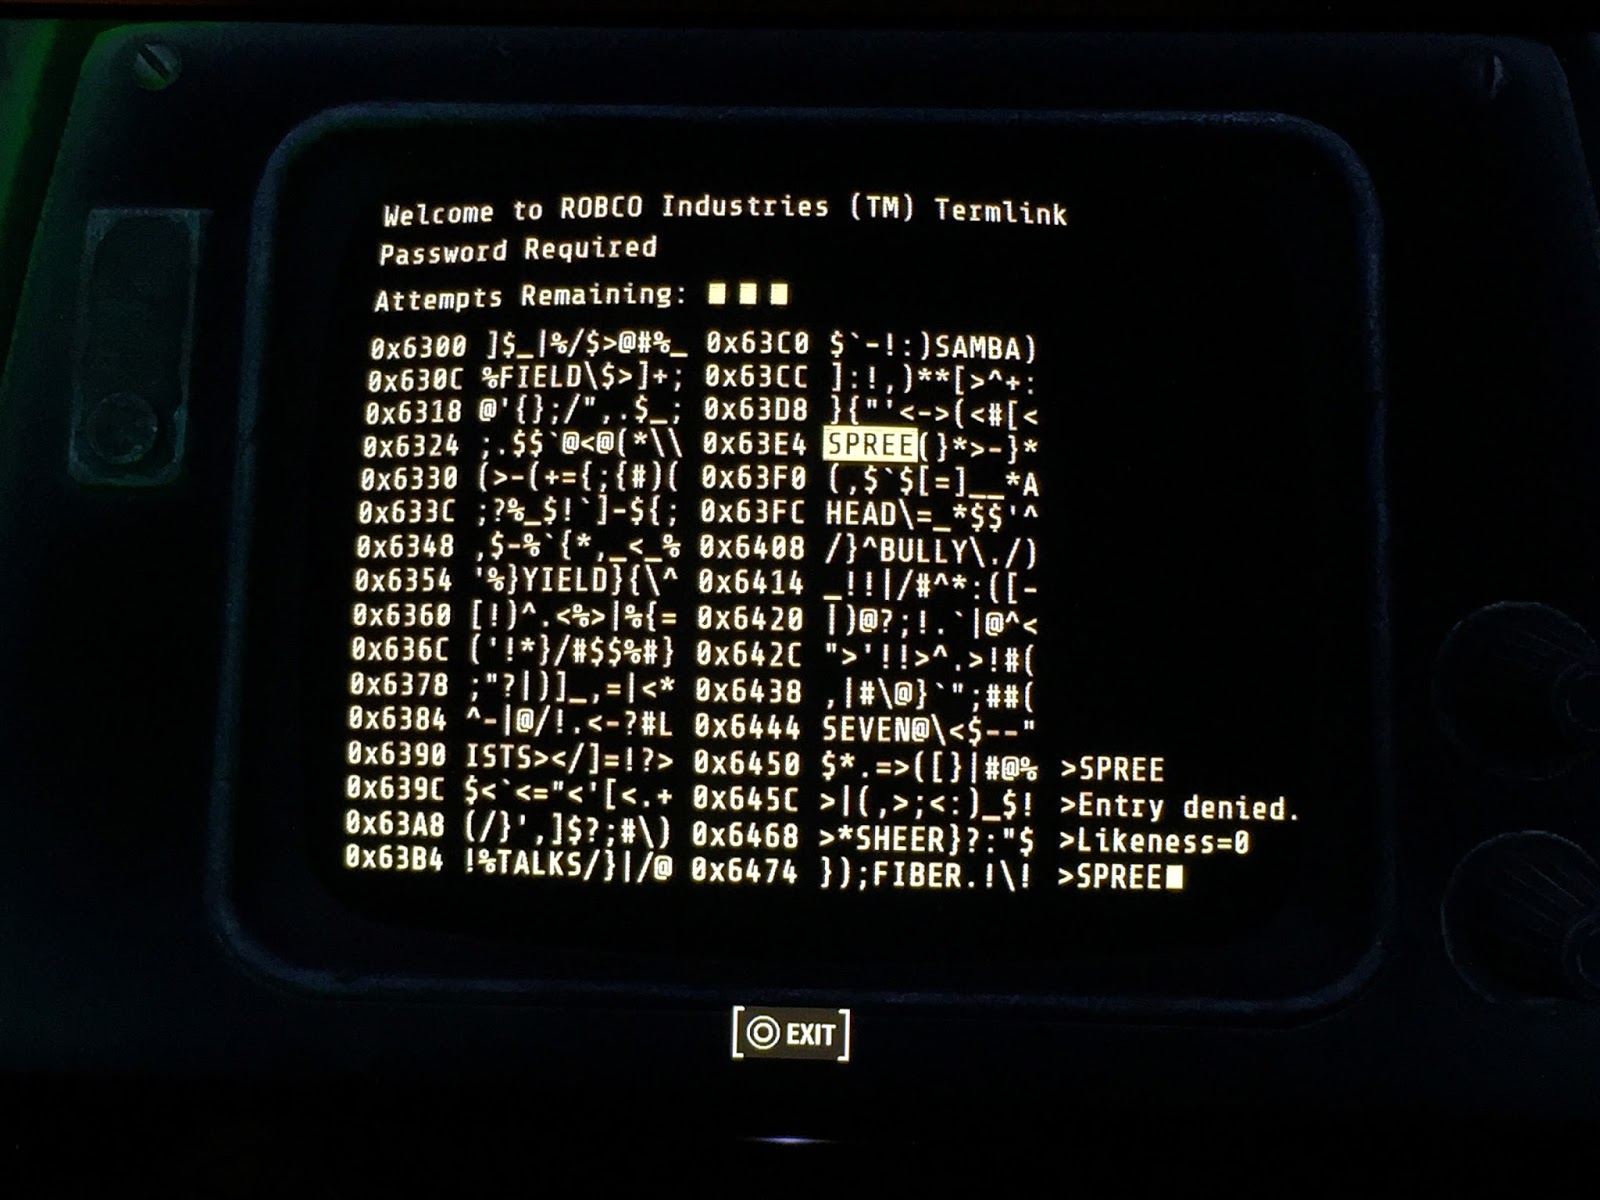 Как разблокировать терминал. Fallout 4 Terminal Hacking. Пароль от терминала Fallout 4 робко Индастриз. Компьютерный код терминал Fallout обои. How to Hack Terminals in Fallout.